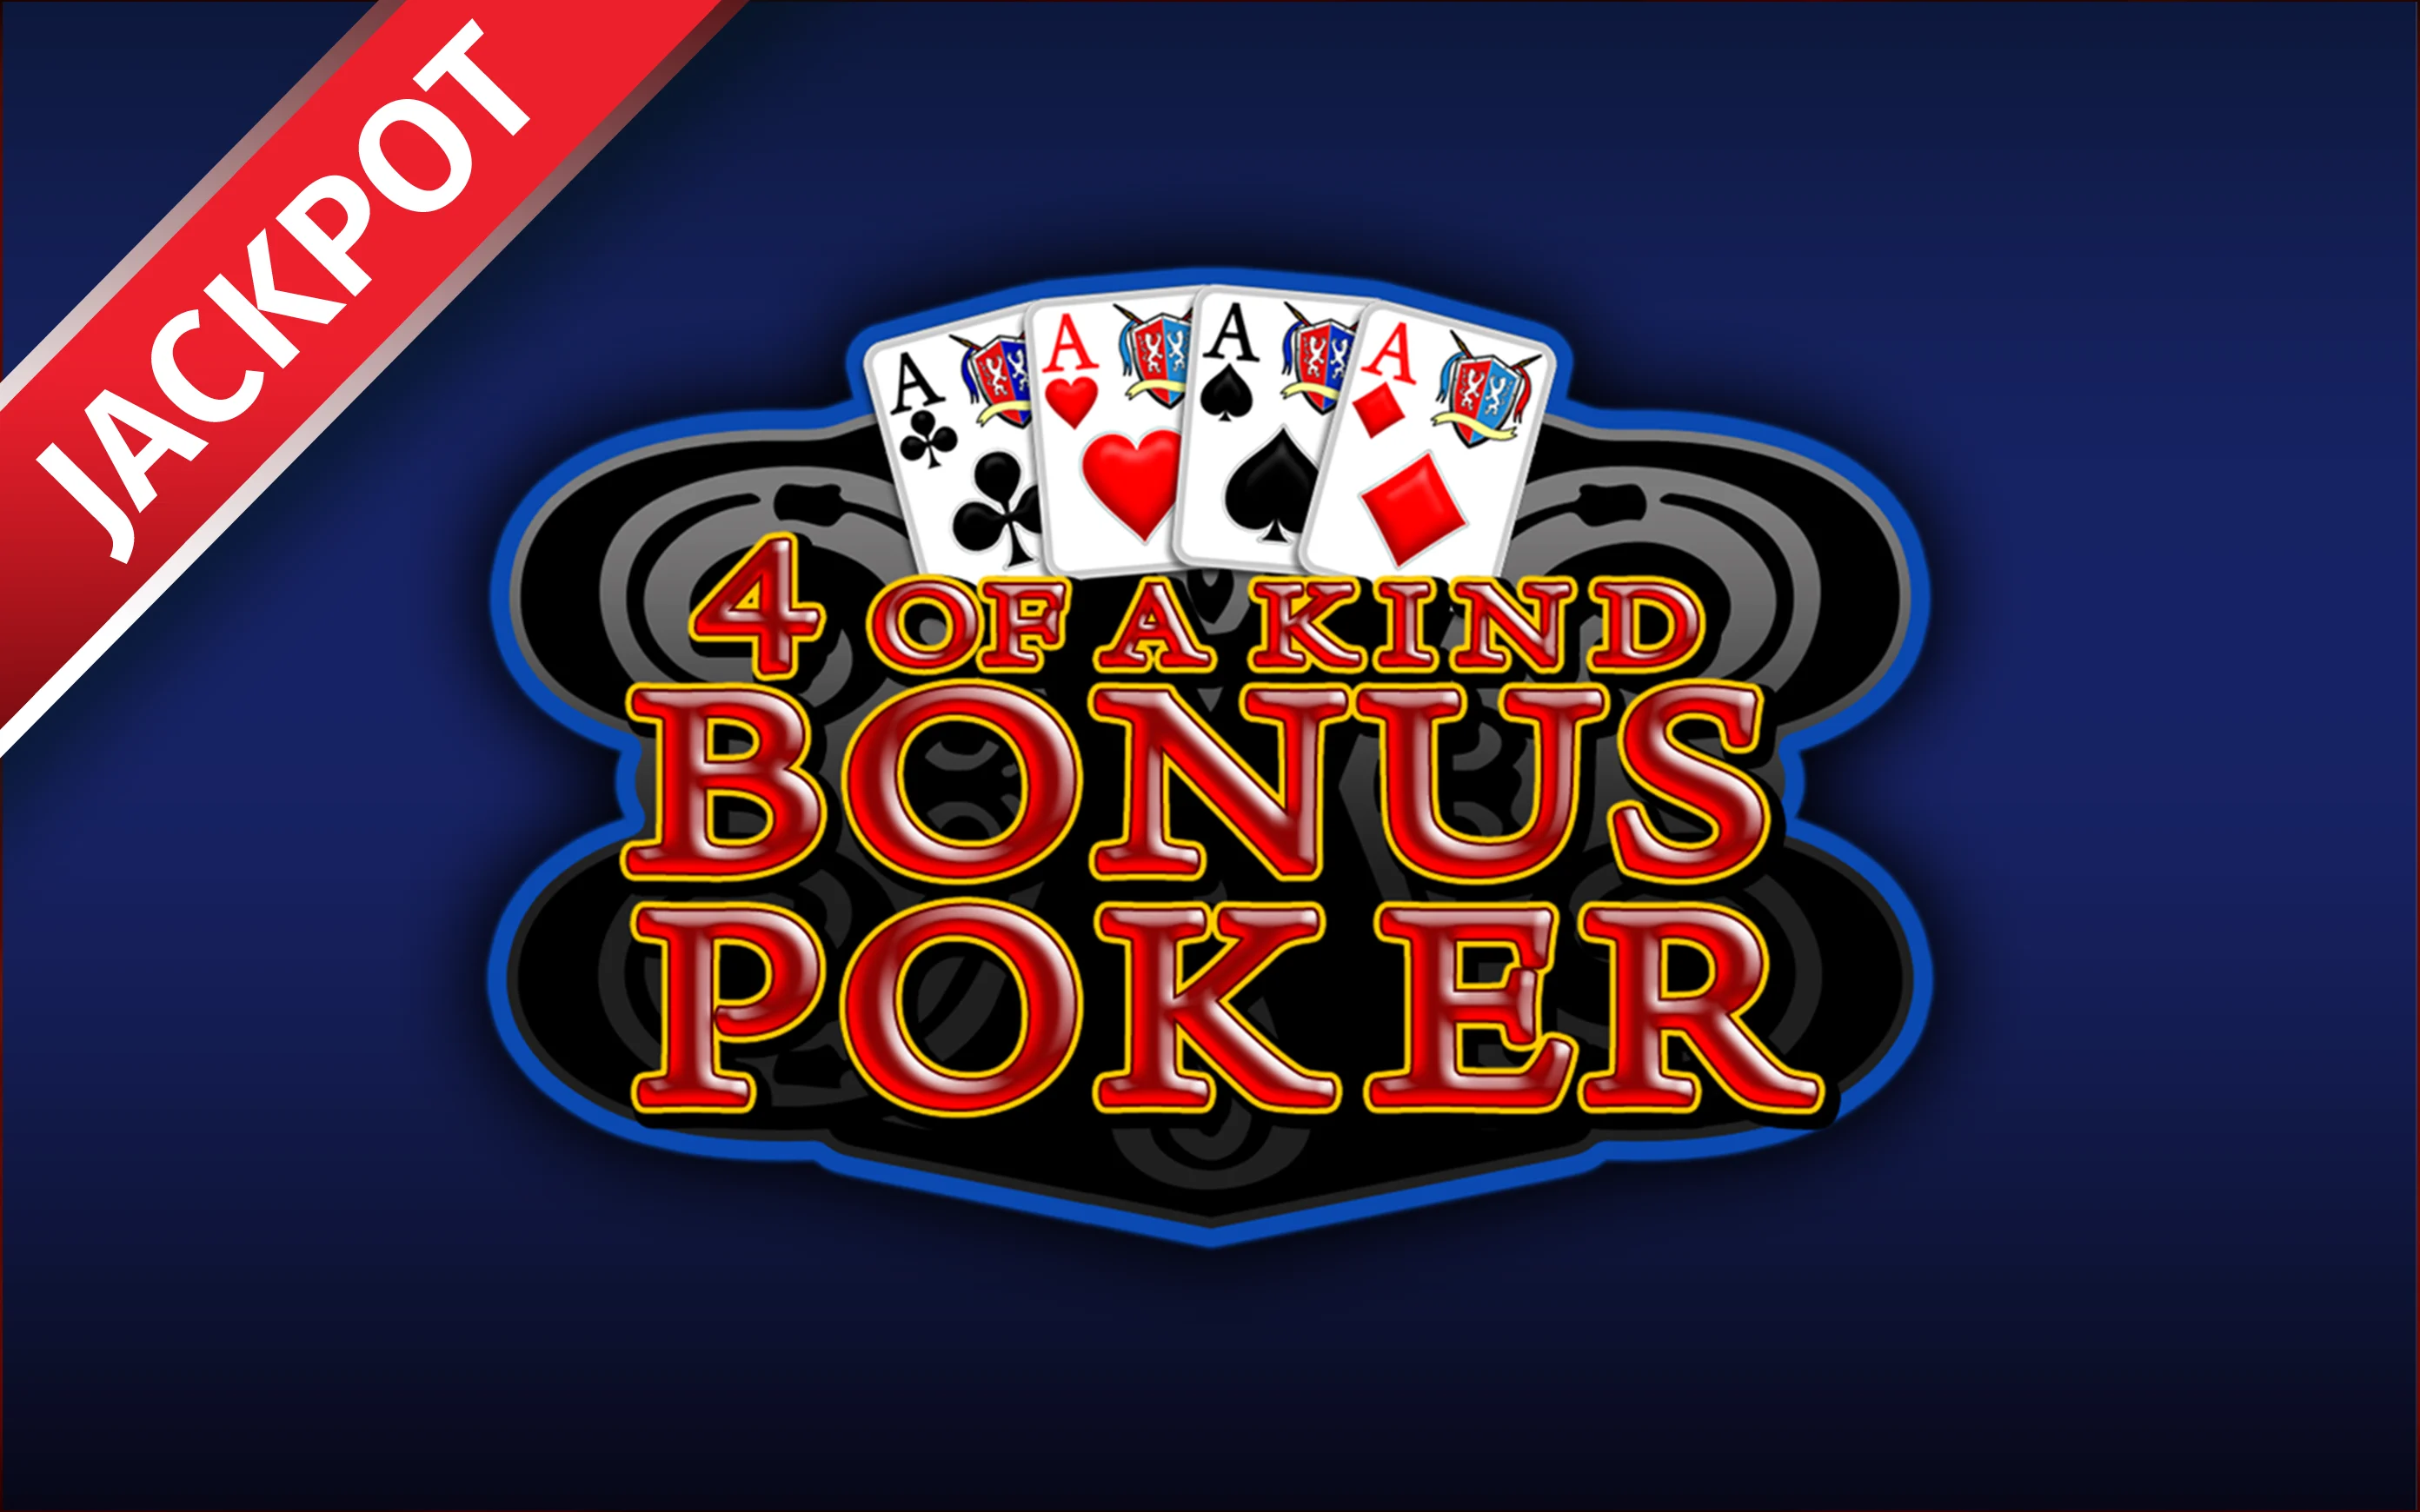 Starcasino.be online casino üzerinden 4 of a kind Bonus Poker oynayın